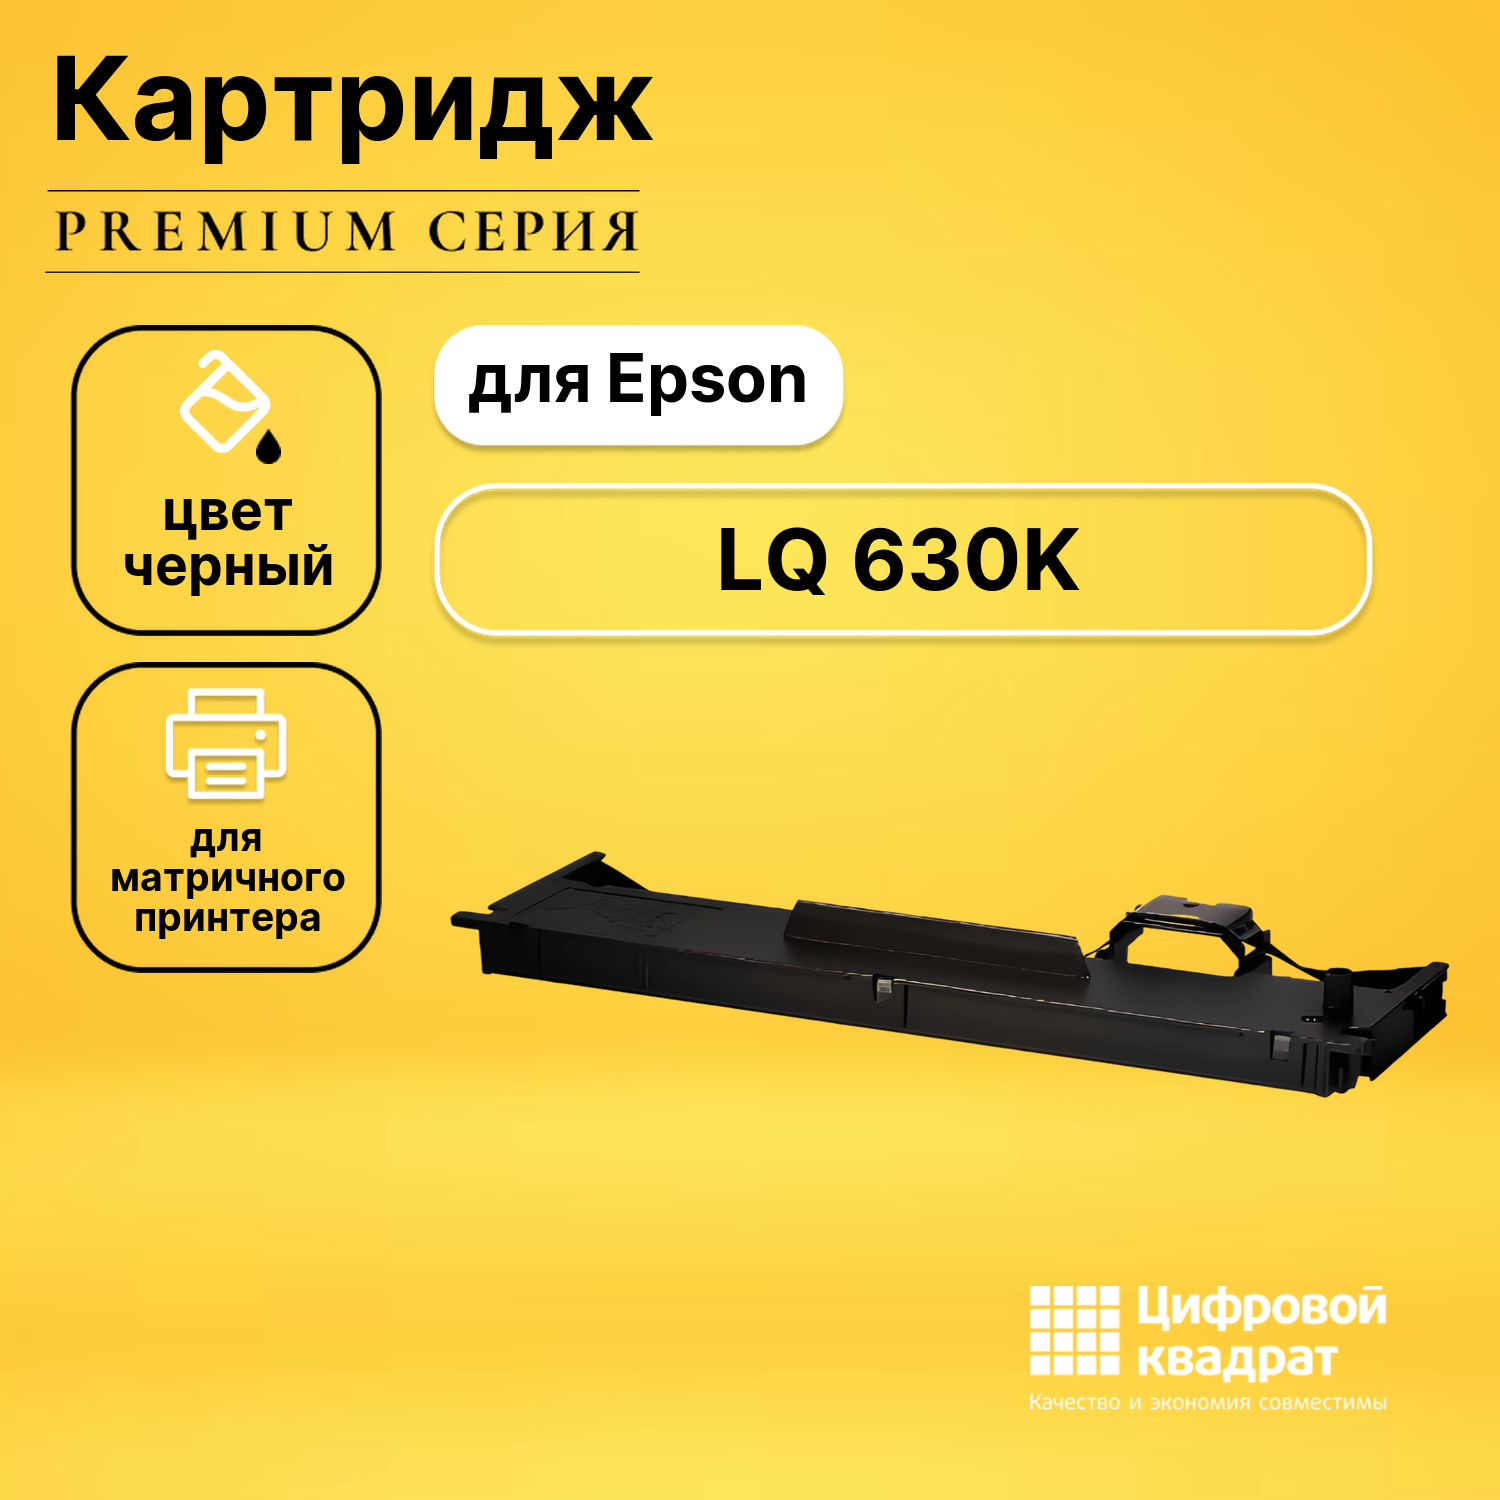 Риббон-картридж DS для Epson LQ 630K совместимый